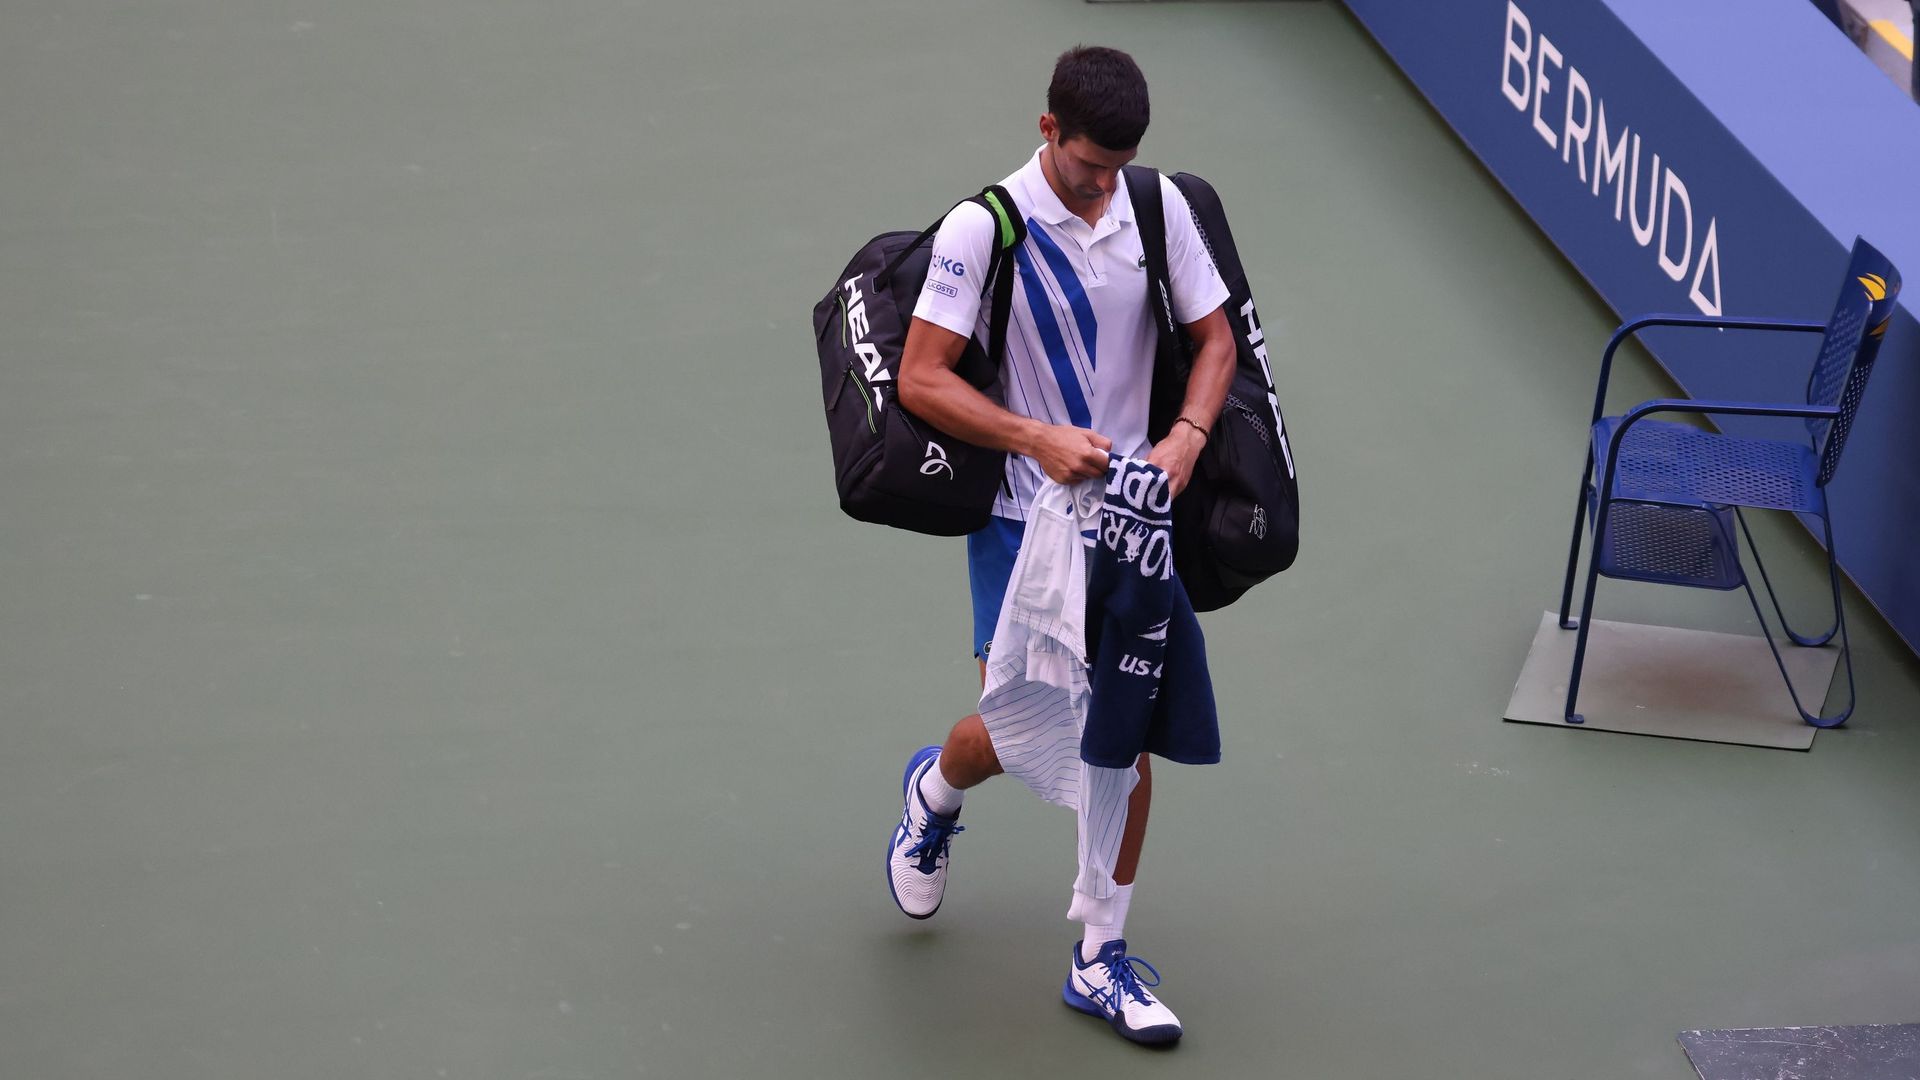 Novak Djokovic, arrivé à Rome pour disputer le Masters 1000, a confié lundi sa hâte de retrouver les courts après sa disqualification spectaculaire à l’US Open pour avoir involontairement lancé une balle sur une juge de ligne.